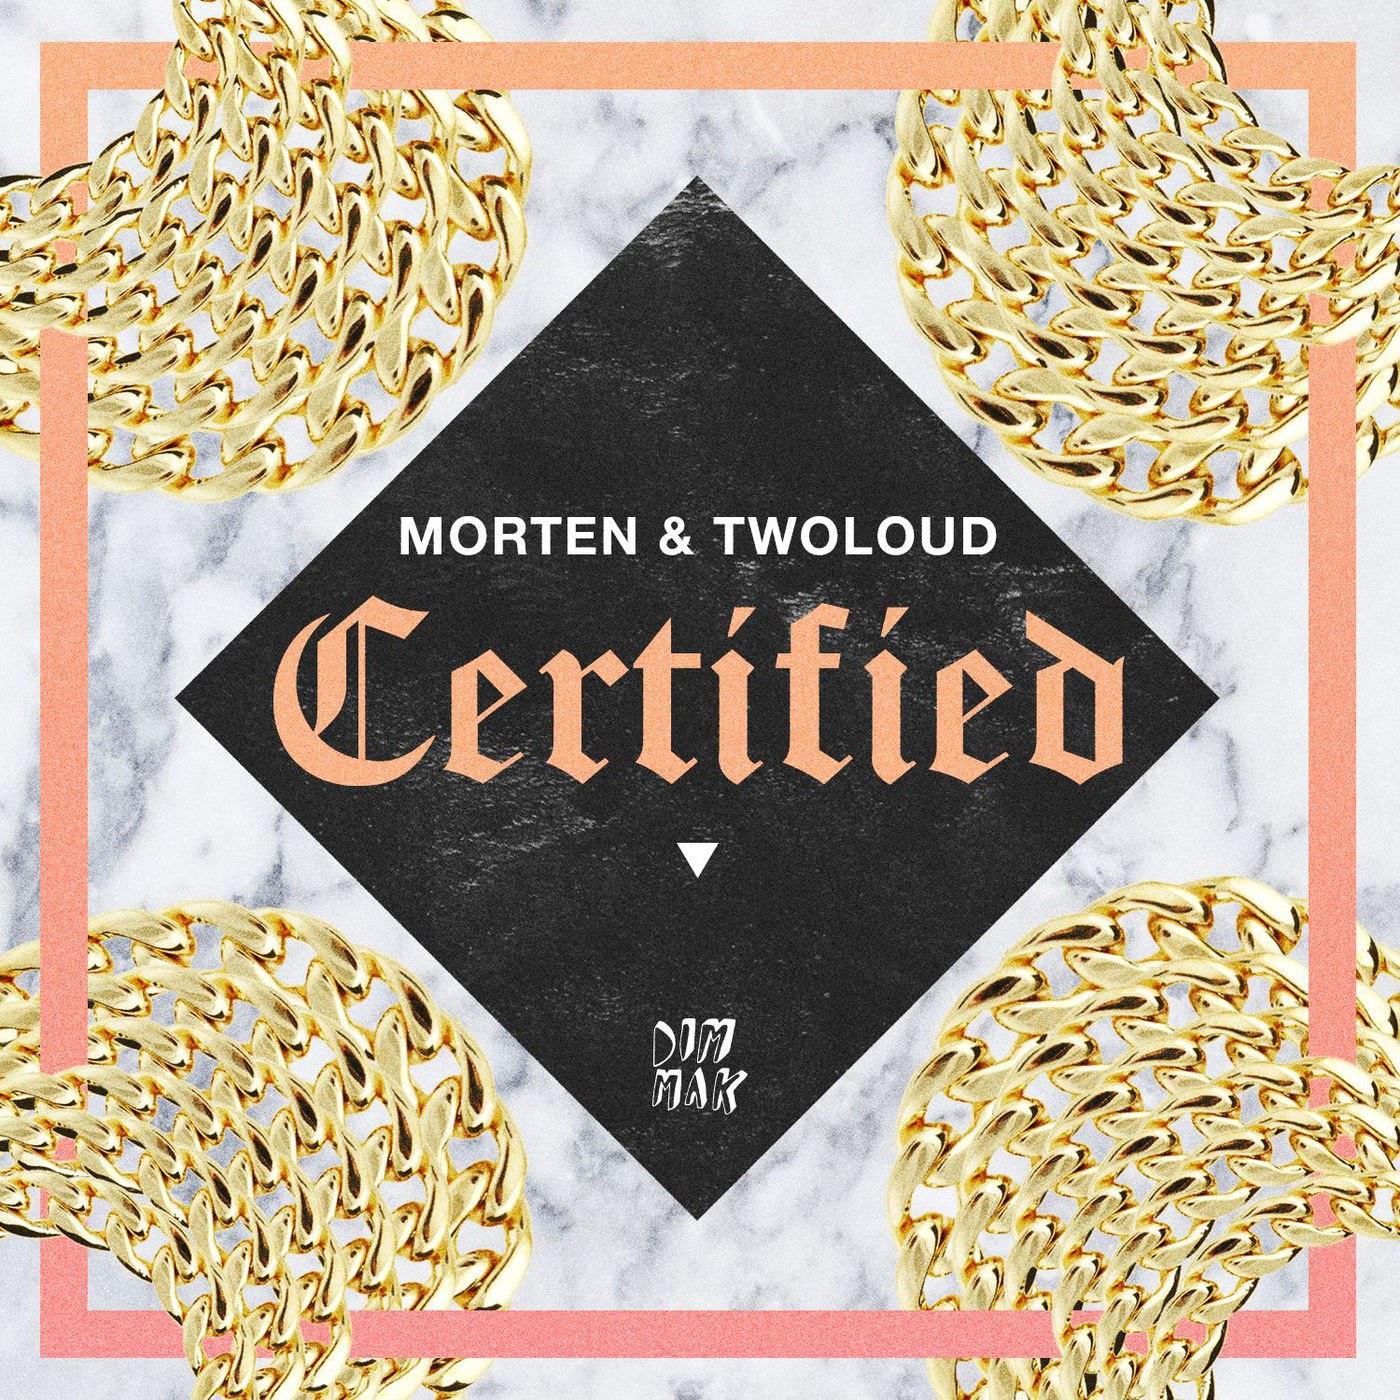 Certified (Original Mix)